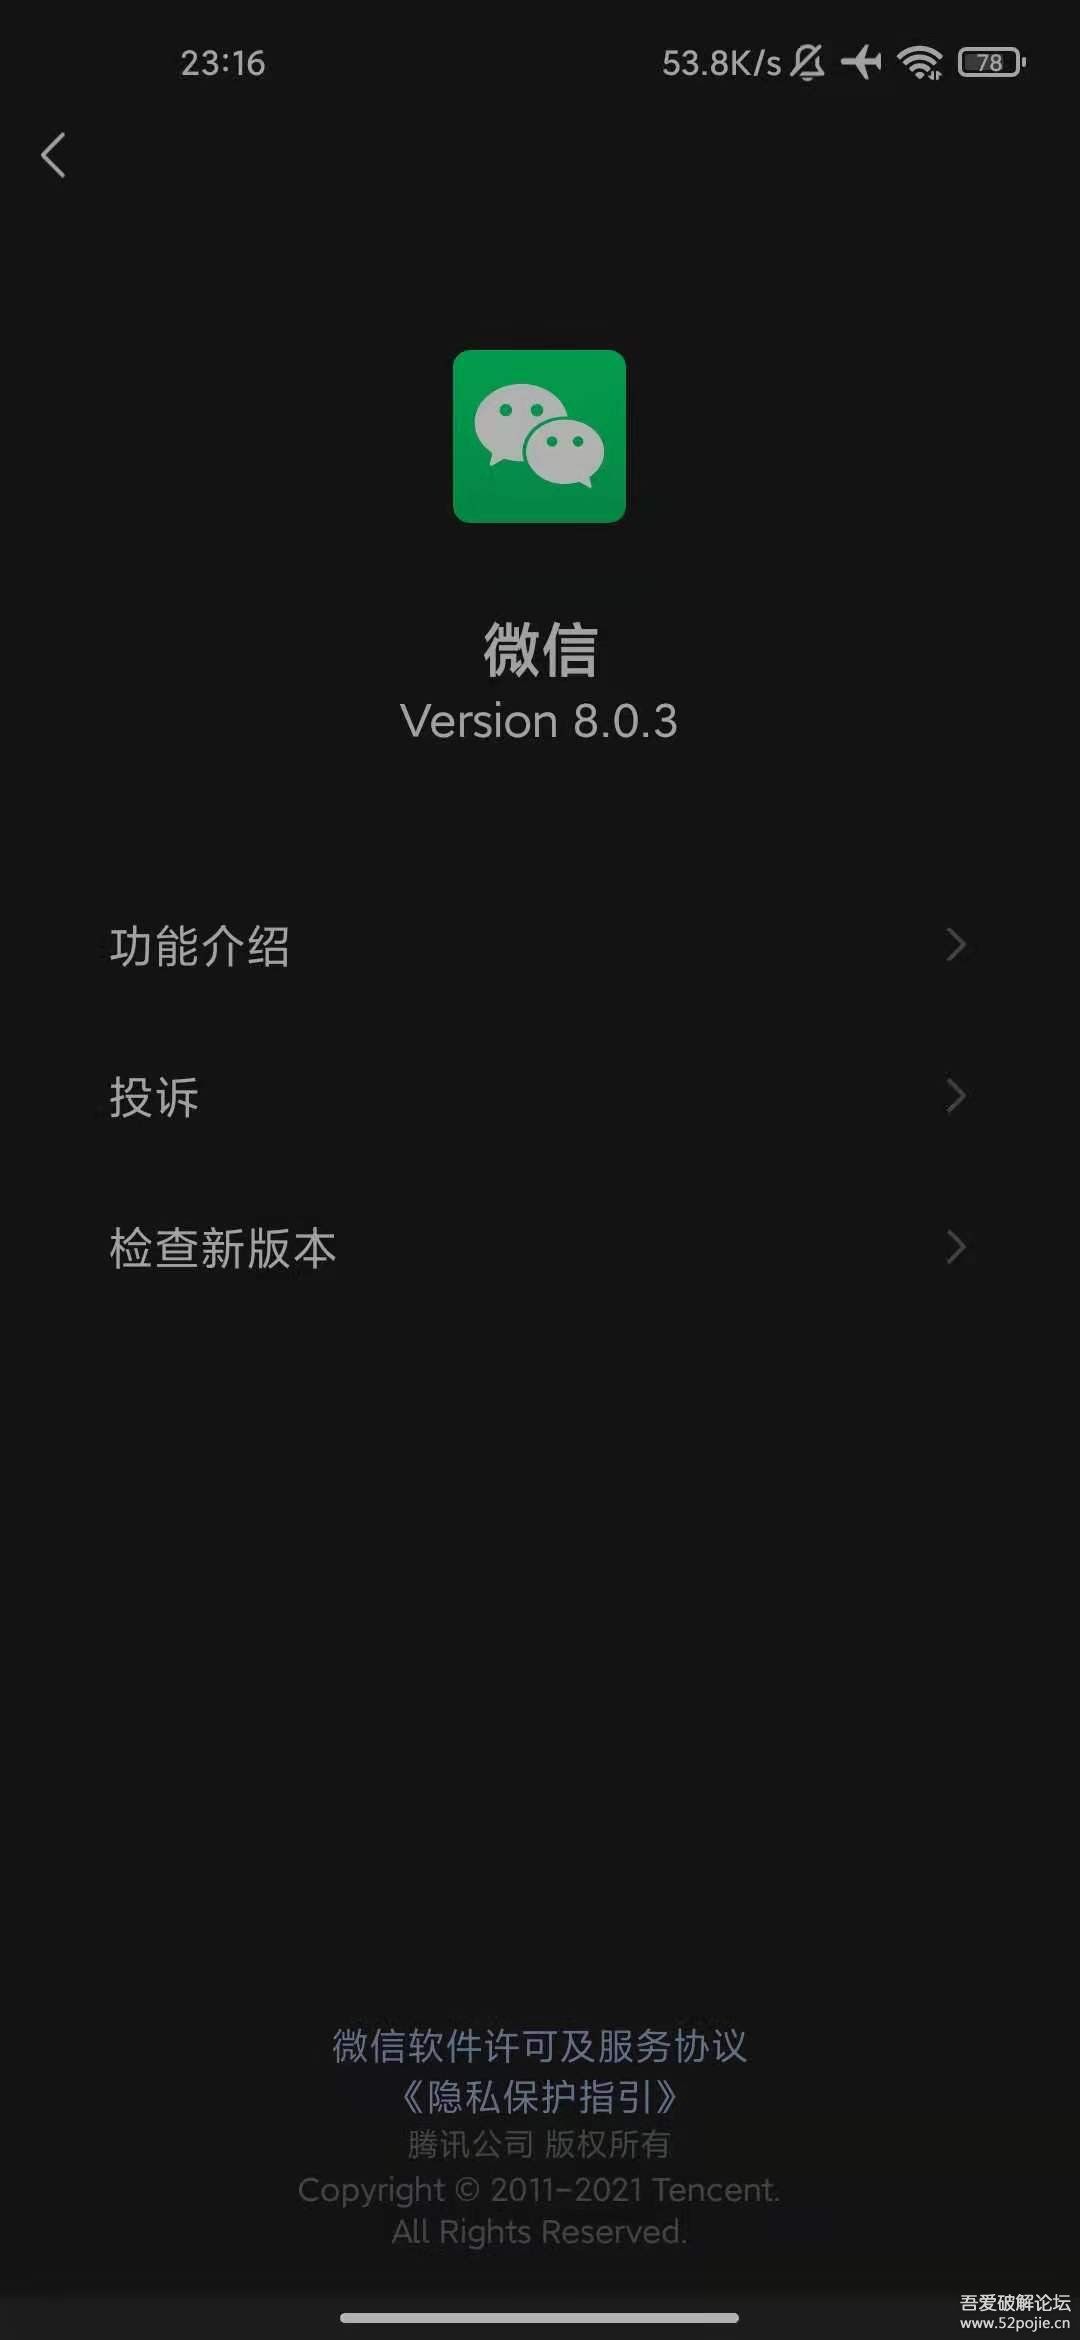 微信 WeChat 8.0.3 for Android 官方正式版